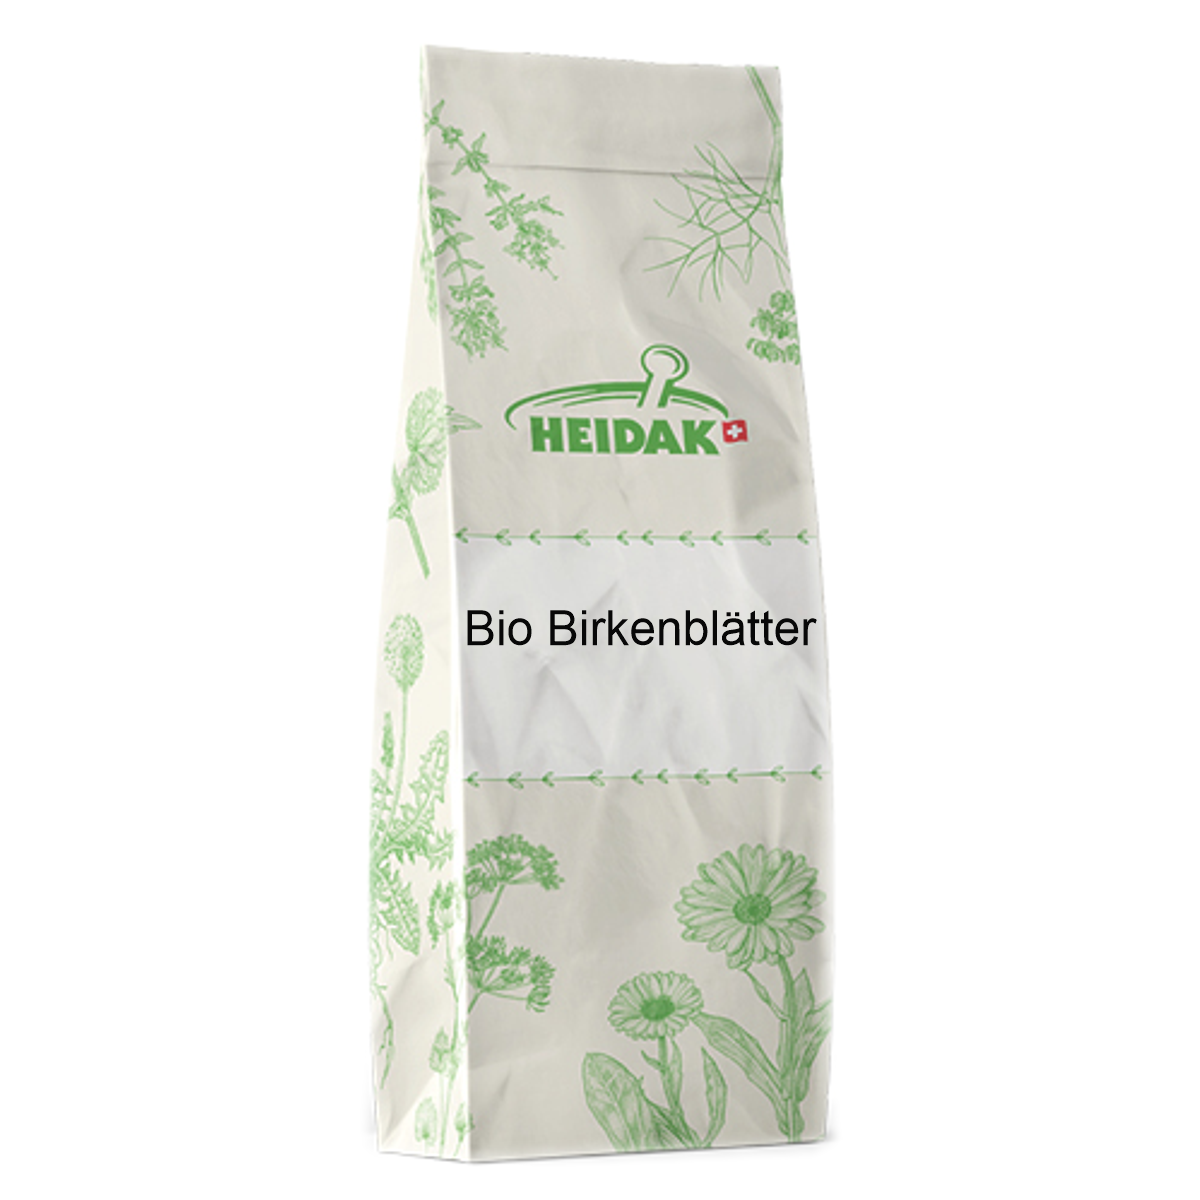 Heidak_Bio_Birkenblaetter_online_kaufen